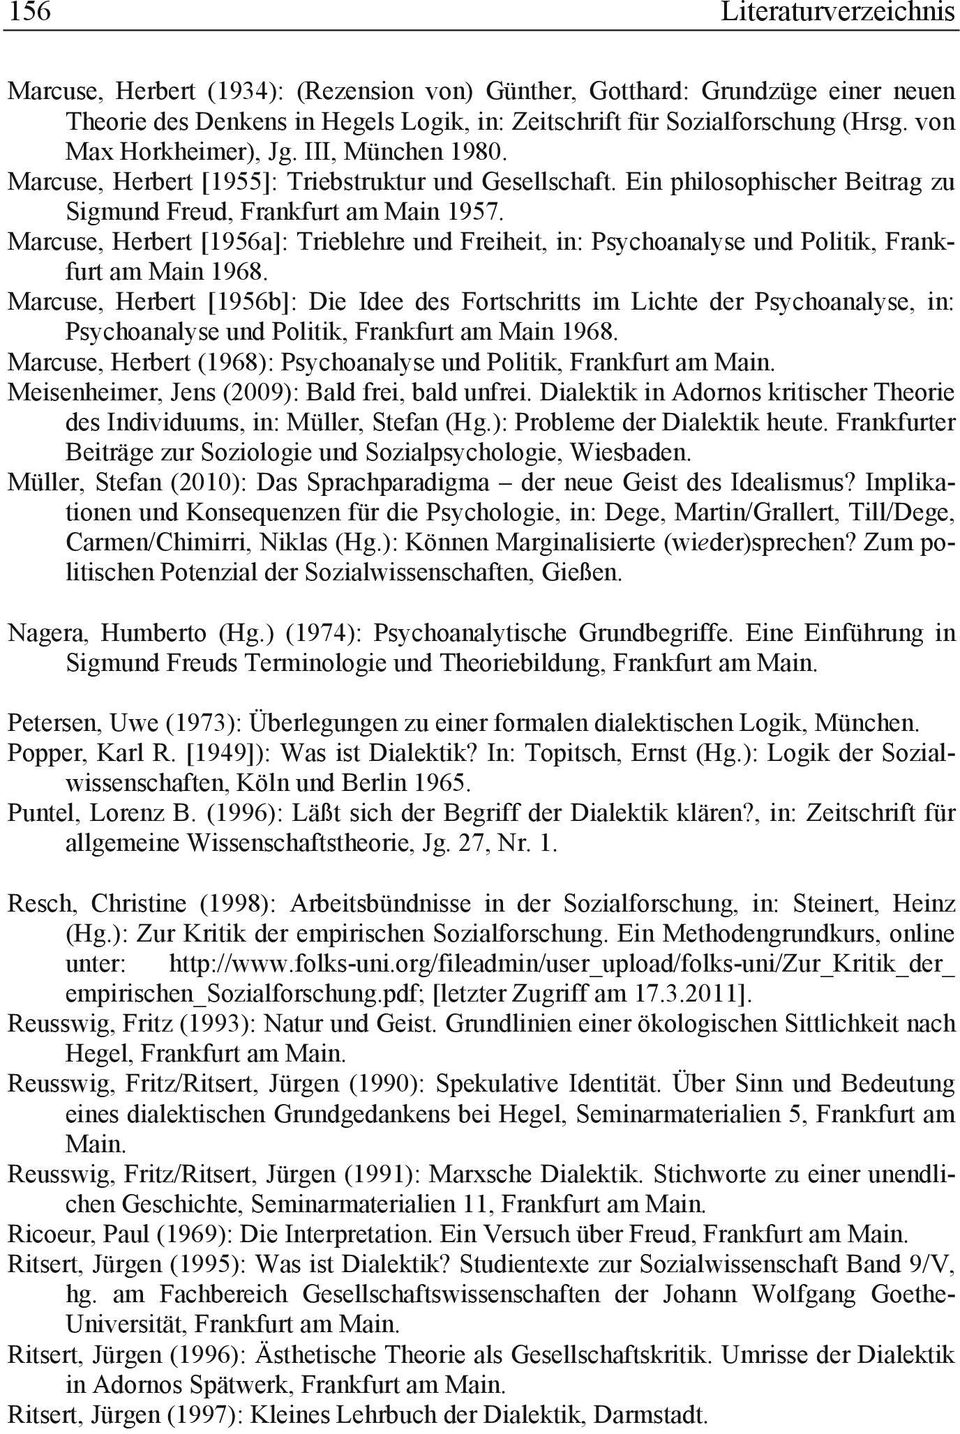 Marcuse, Herbert [1956a]: Trieblehre und Freiheit, in: Psychoanalyse und Politik, Frankfurt am Main 1968.